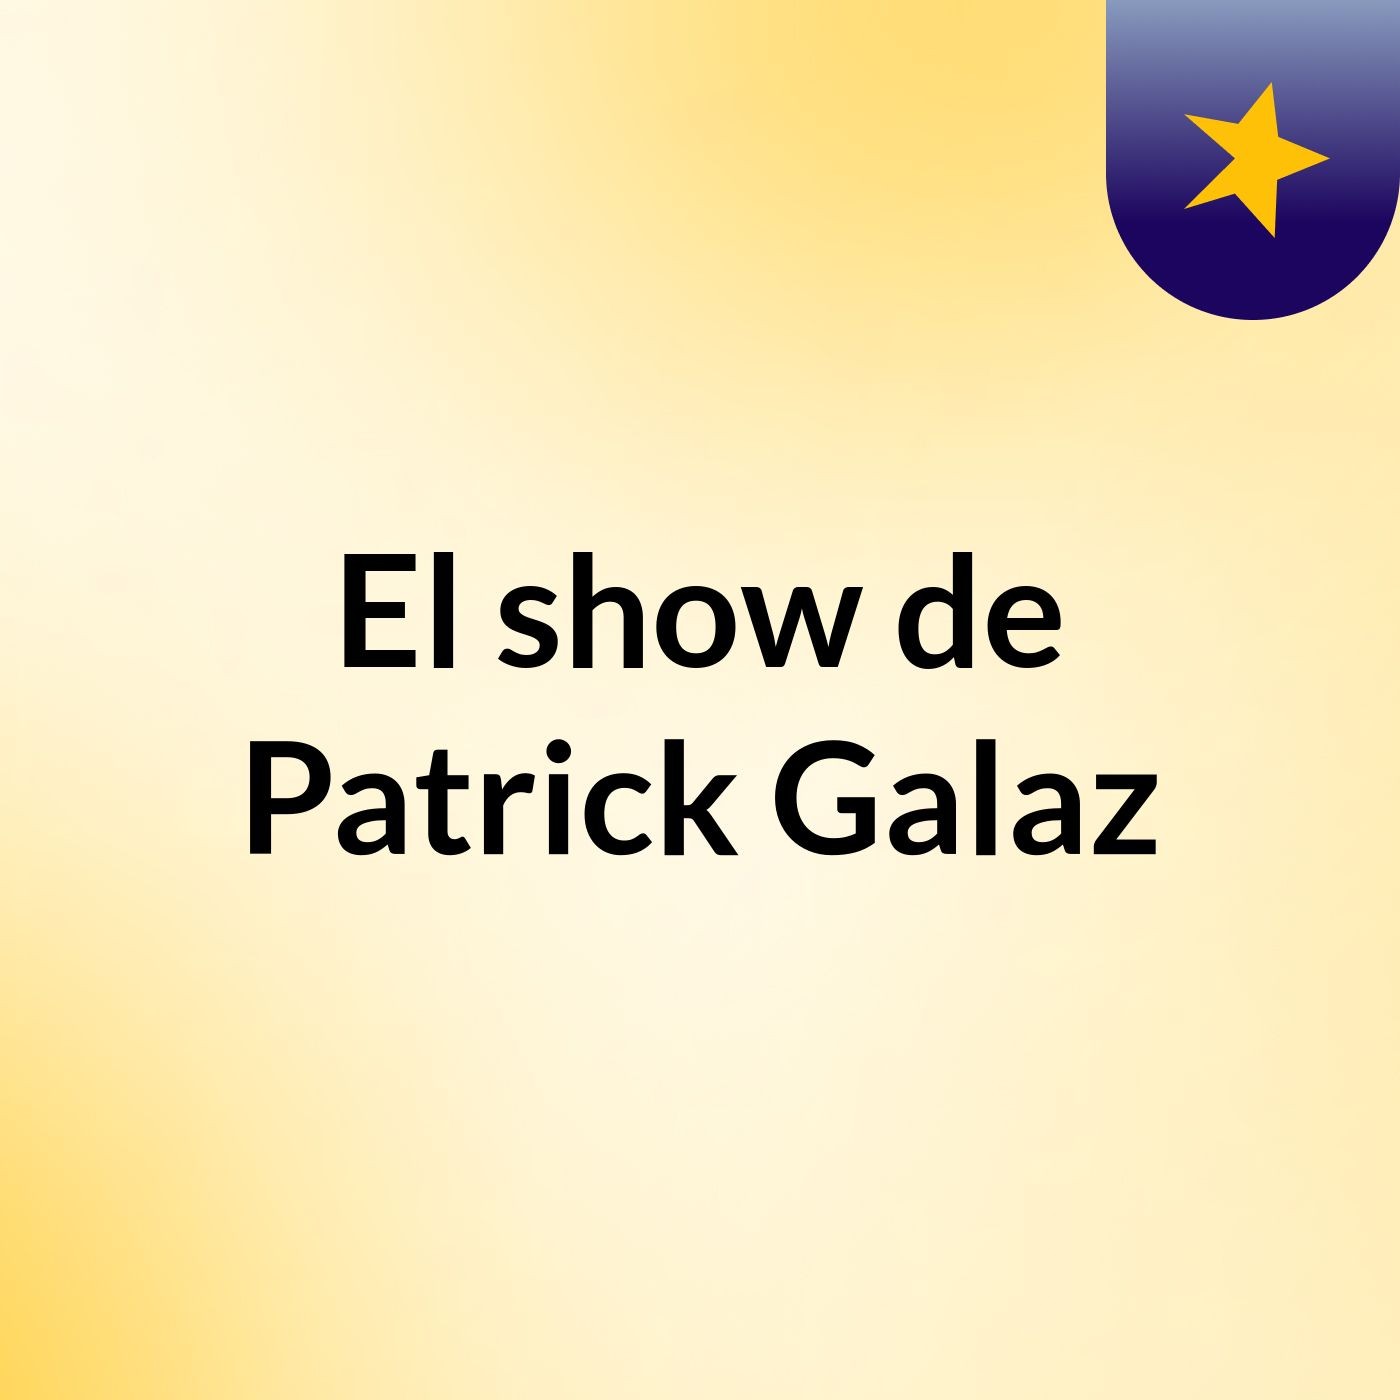 El show de Patrick Galaz